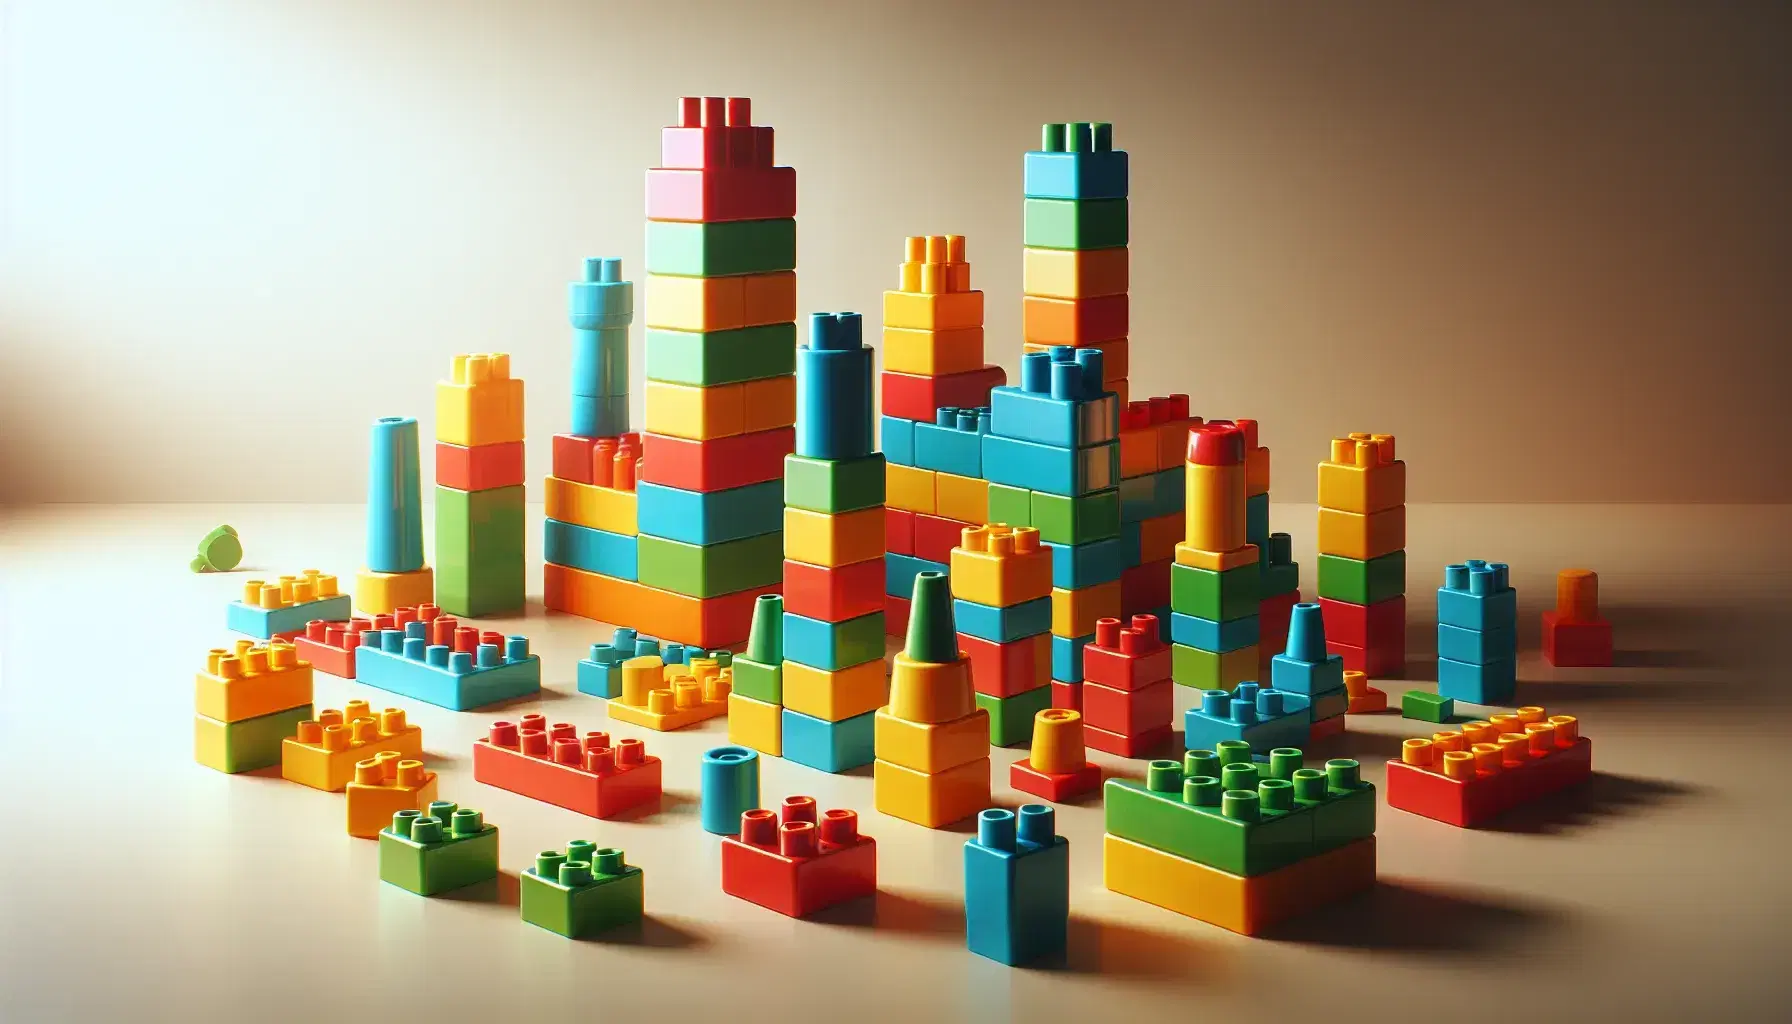 Bloques de construcción de plástico coloridos apilados formando una torre en una superficie lisa, con piezas dispersas alrededor.